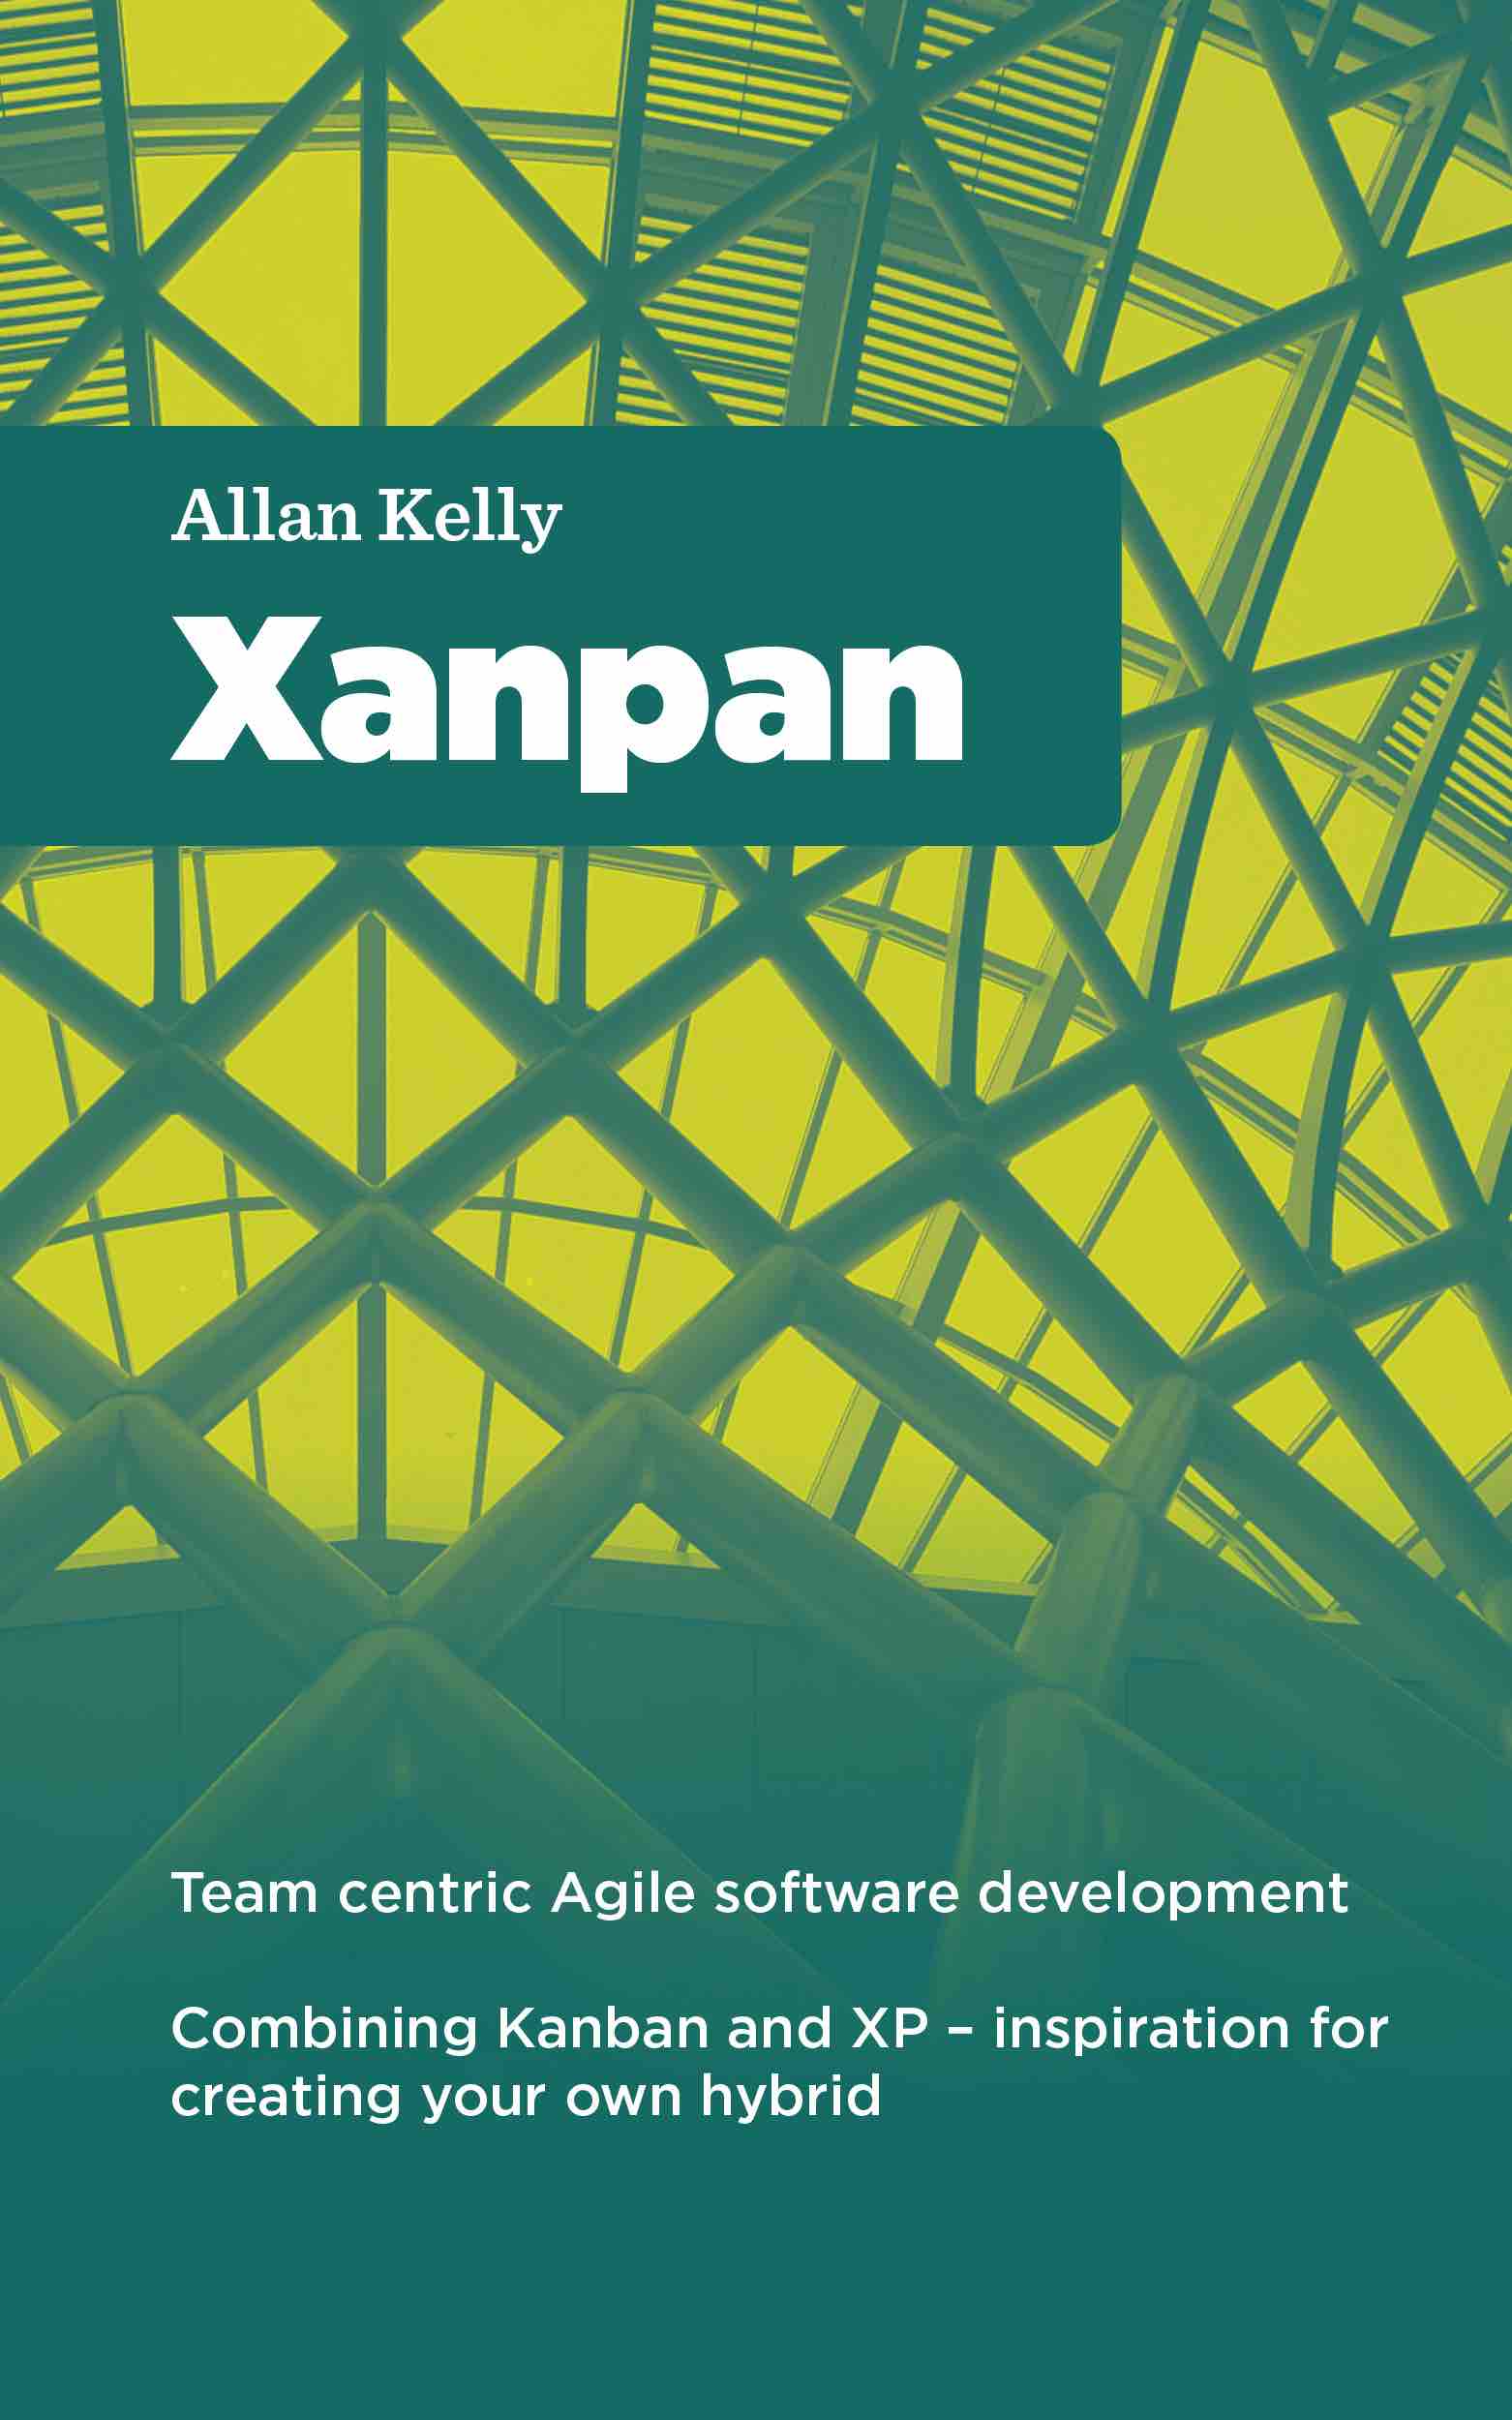 Xanpan_Kindle1Lite-2015-08-5-17-57.jpg